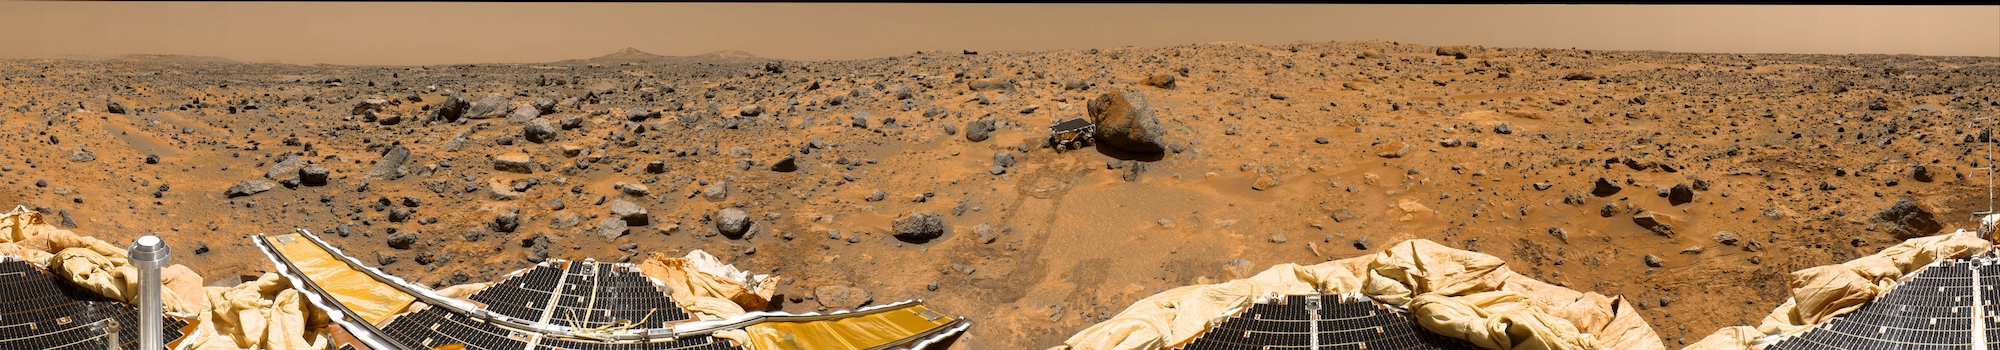 Panorama à 360° réalisé par la station Pathfinder lors de ses 8e, 9e et 10e jours martiens. On peut suivre à la trace le petit rover Sojourner, alors collé contre le gros rocher baptisé Yogi. À l’horizon, au loin, on aperçoit Twin Peaks, reliefs nommés en référence à la série de David Lynch. © Nasa, JPL